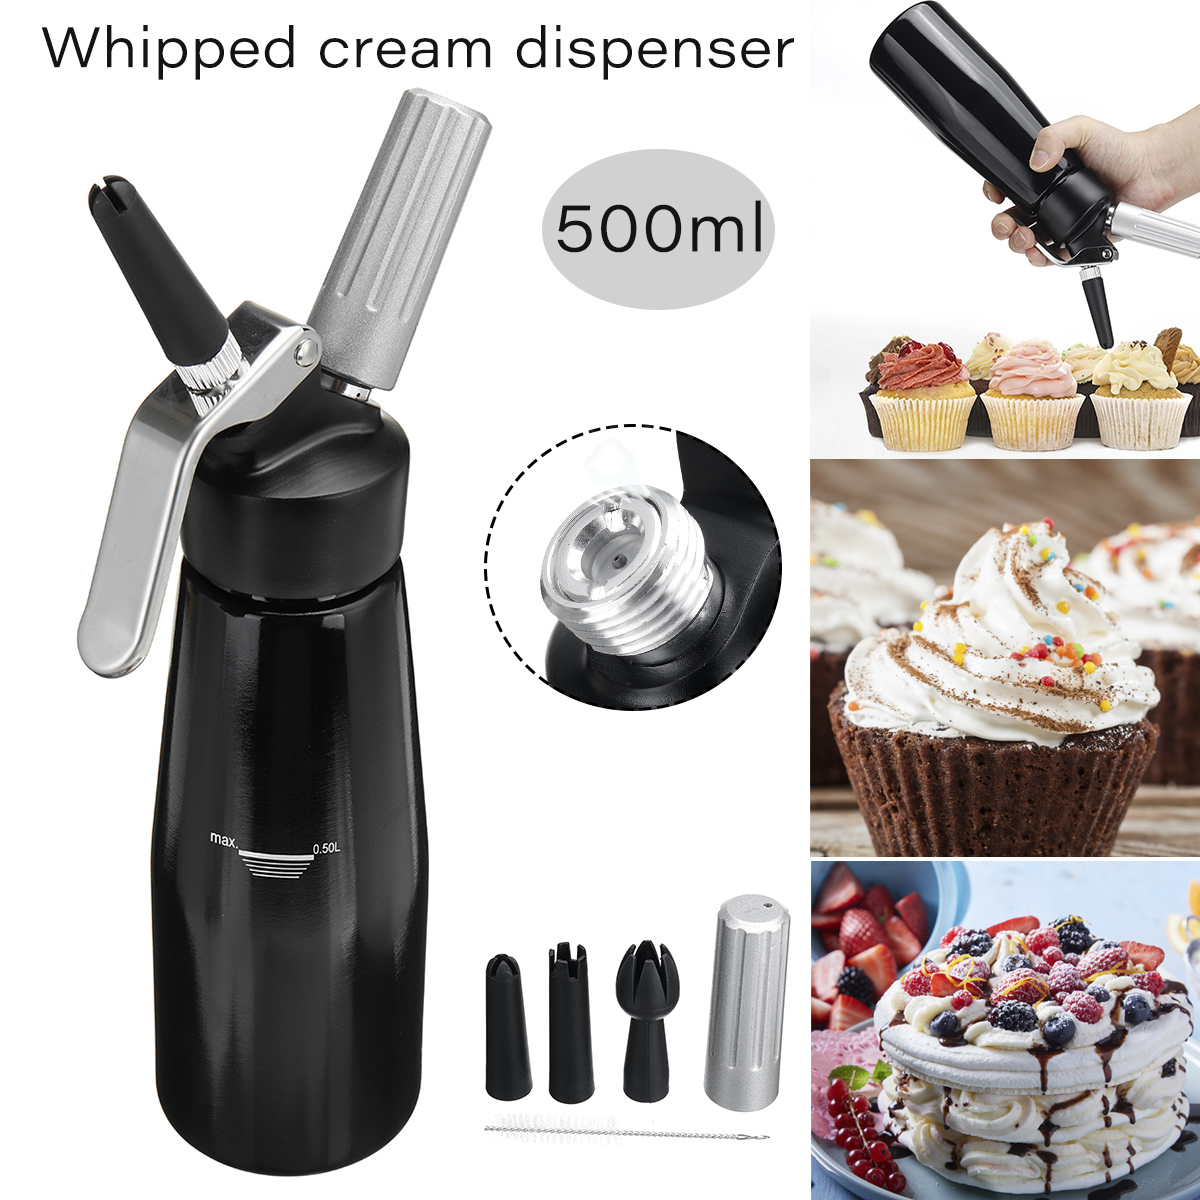 Whip Cream Dispenser | best whipped cream dispenser | 1 quart whipped cream dispenser